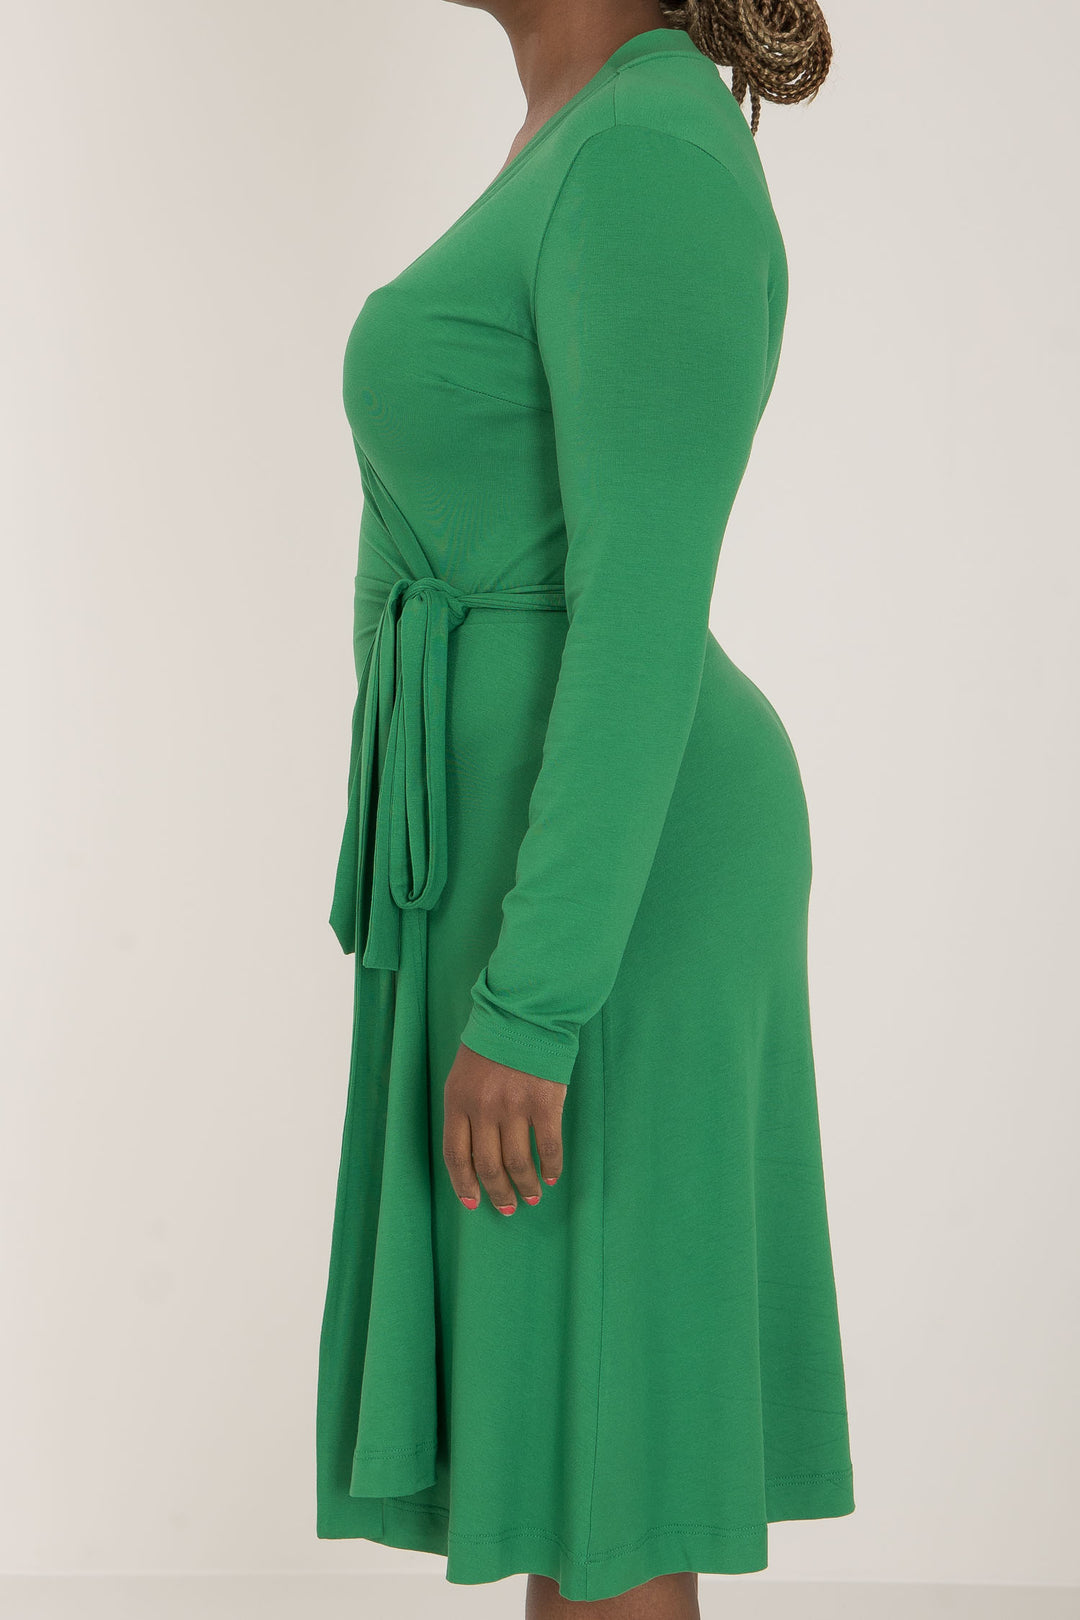 Bestie short wrap jersey dress - Green - Knälång, grön omlottklänning i trikå